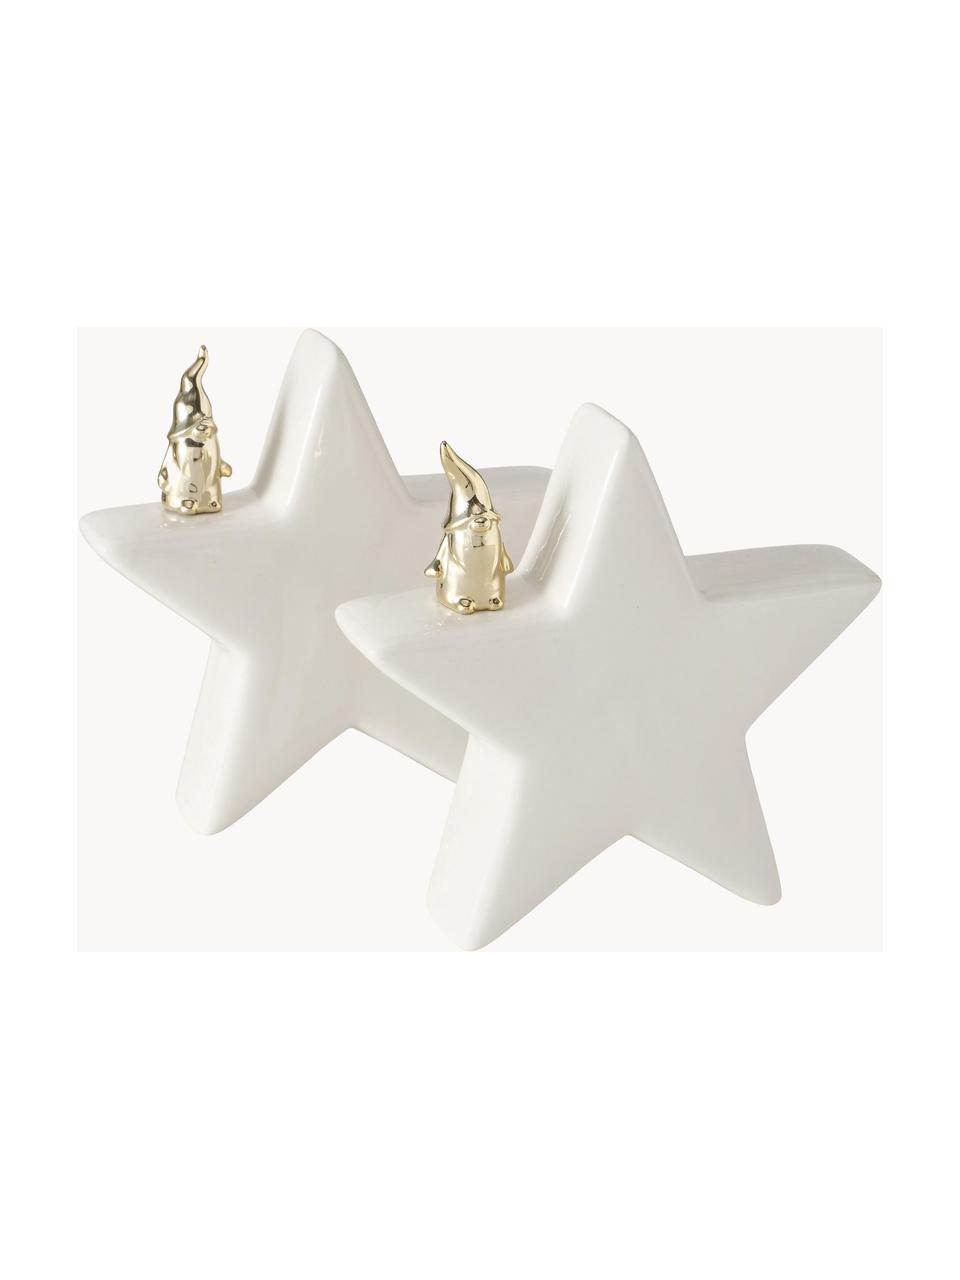 Deko-Sterne Cornie in Weiß H 15 cm, 2 Stück, Steingut, Weiß, Goldfarben, B 15 x H 15 cm